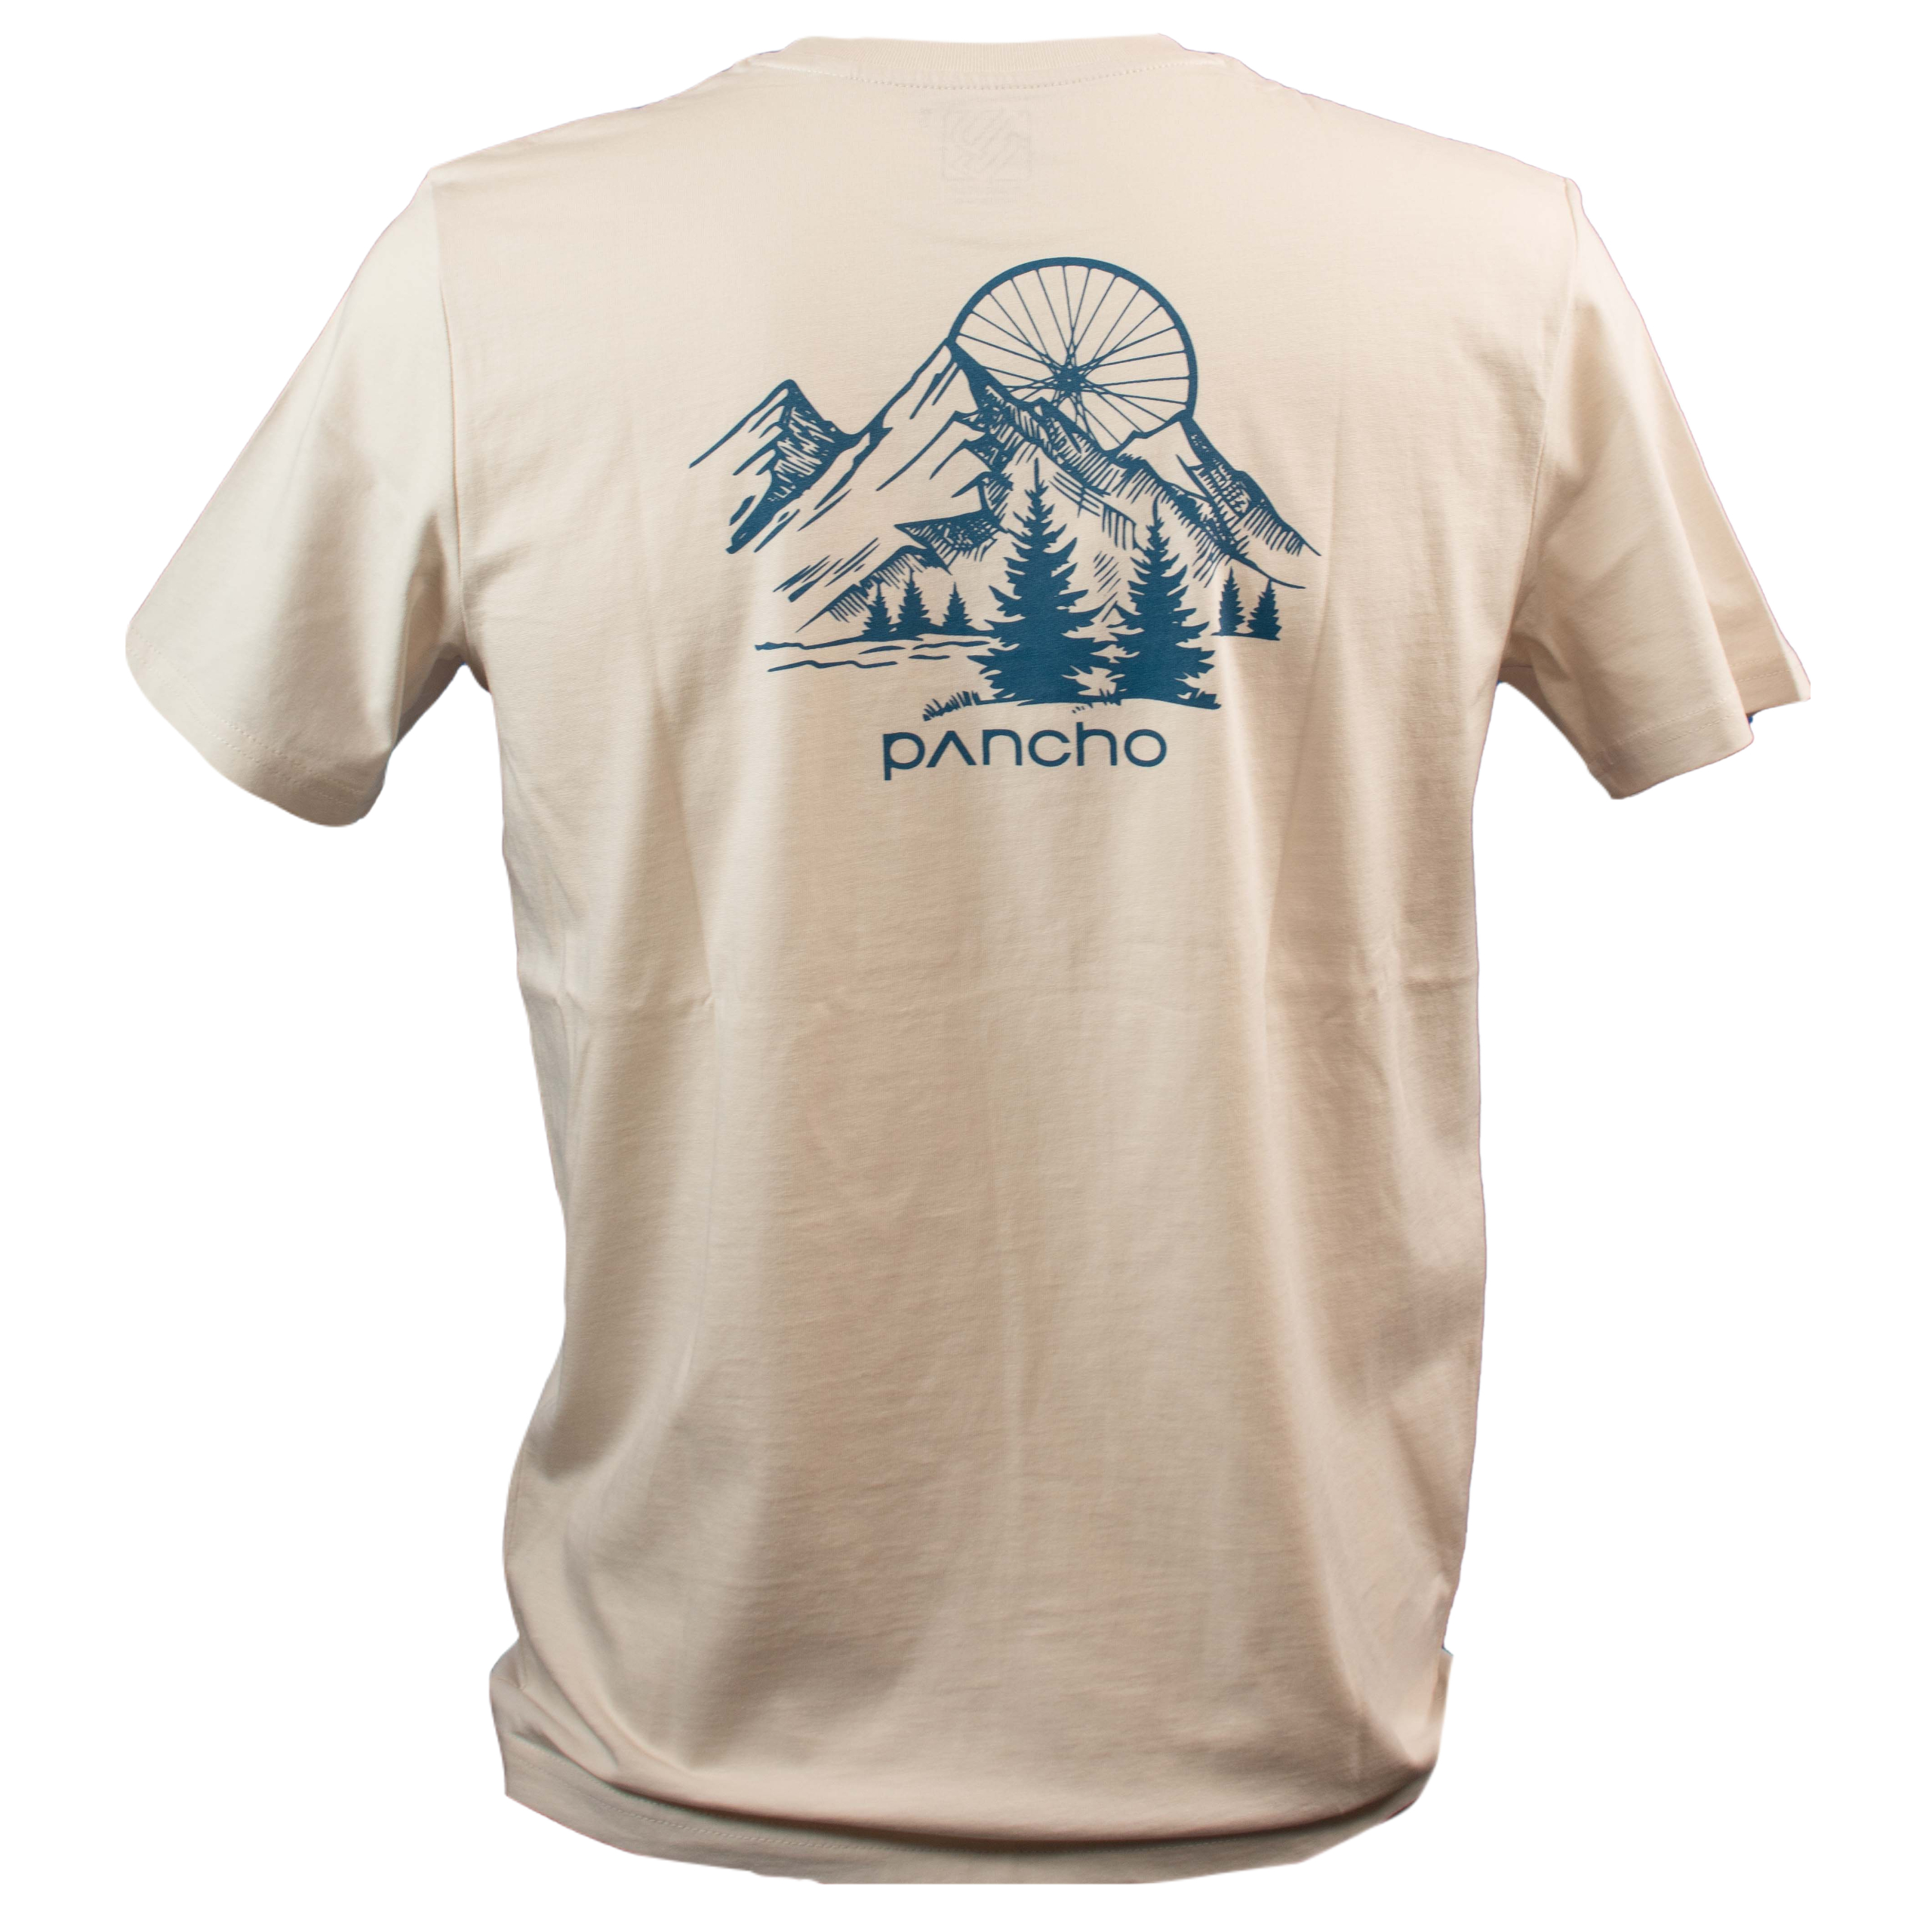 Panchowheels x Dirt Love T-Shirt "Surf the Trail", creme 